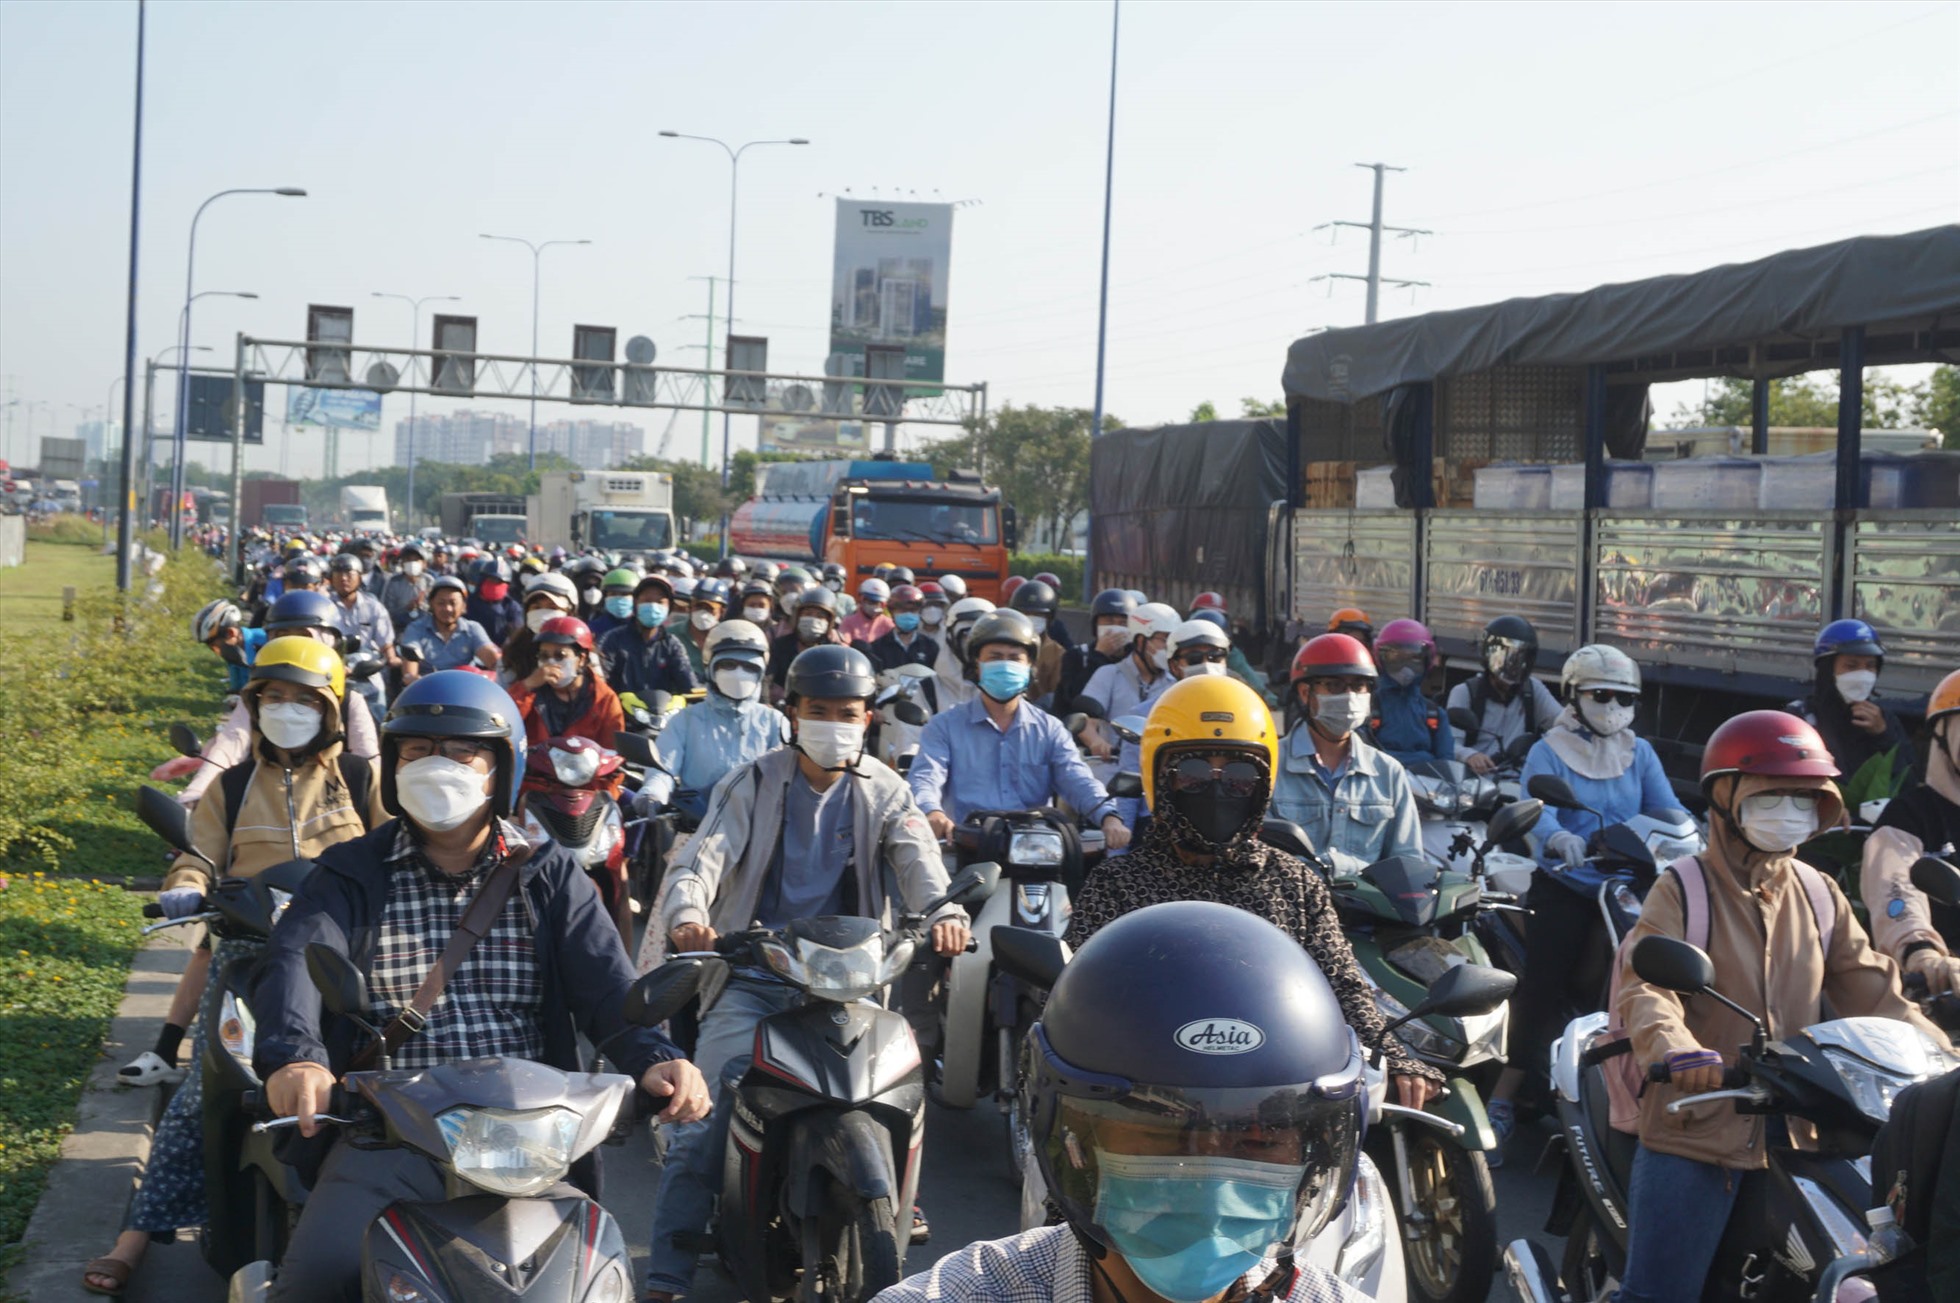 ạn vừa qua cầu Rạch Chiếc đến nút giao quay đầu đường Mai Chí Thọ, có nhiều dòng xe đổ dồn về gây xung đột giao thông.